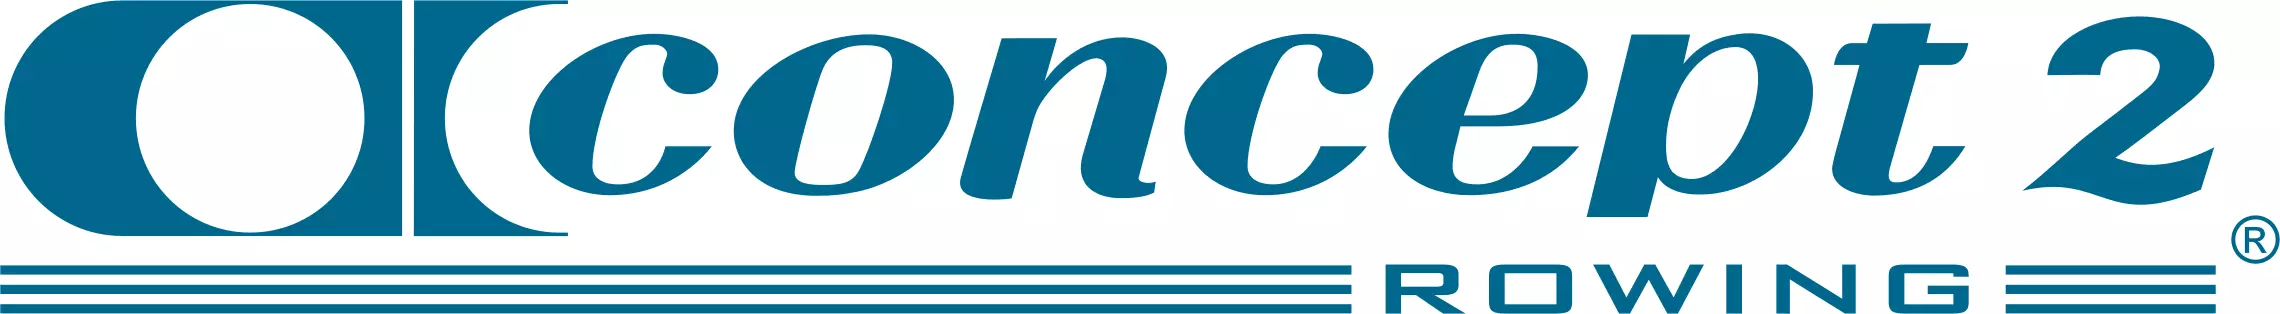 concept2 logo